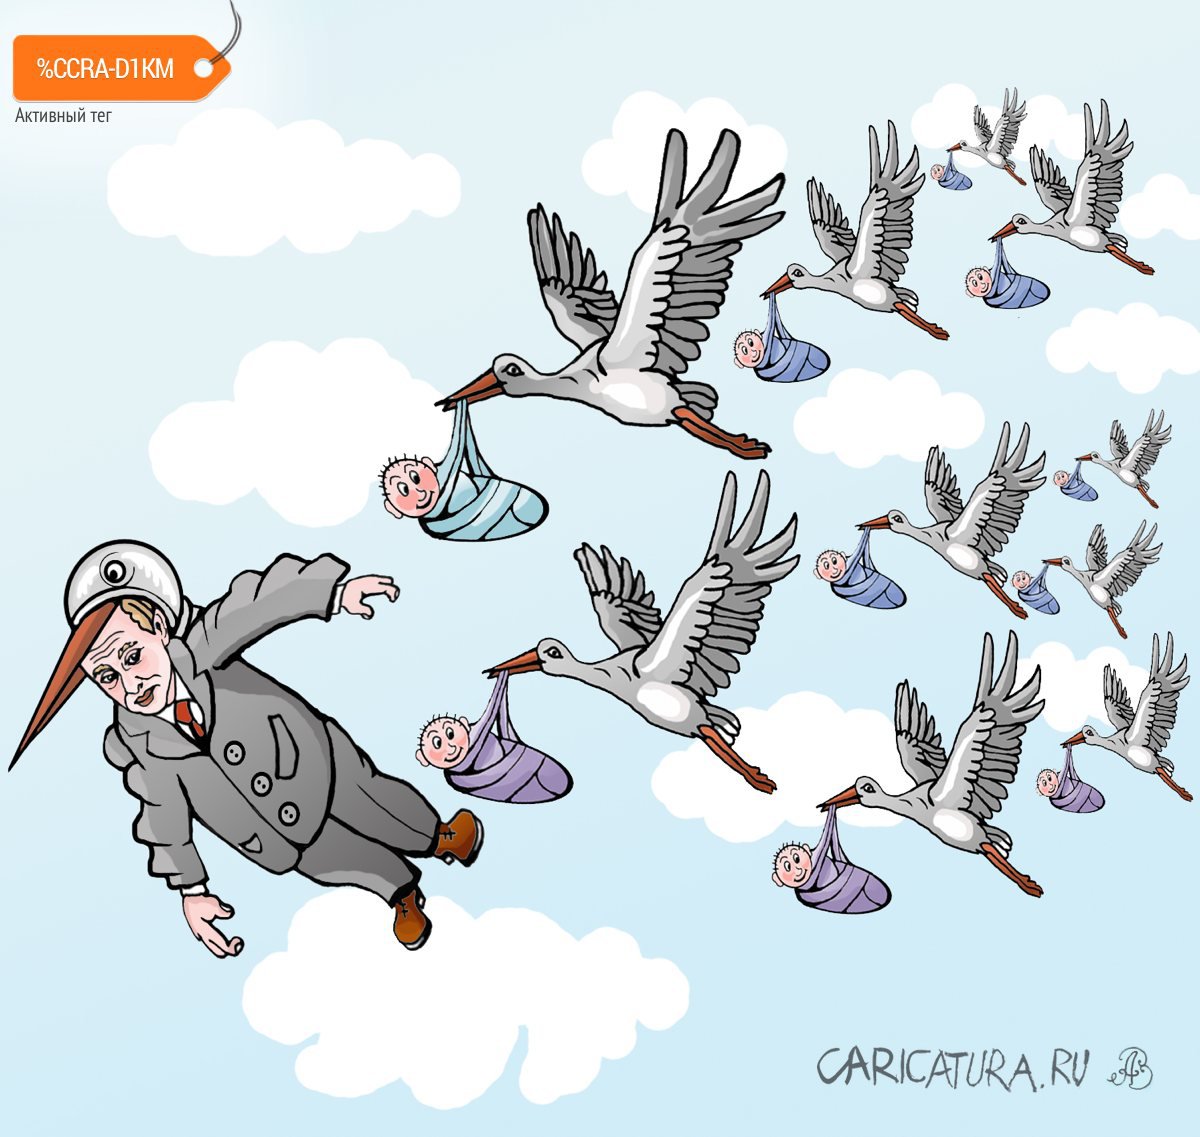 Карикатура "Вожак", Андрей Ребров